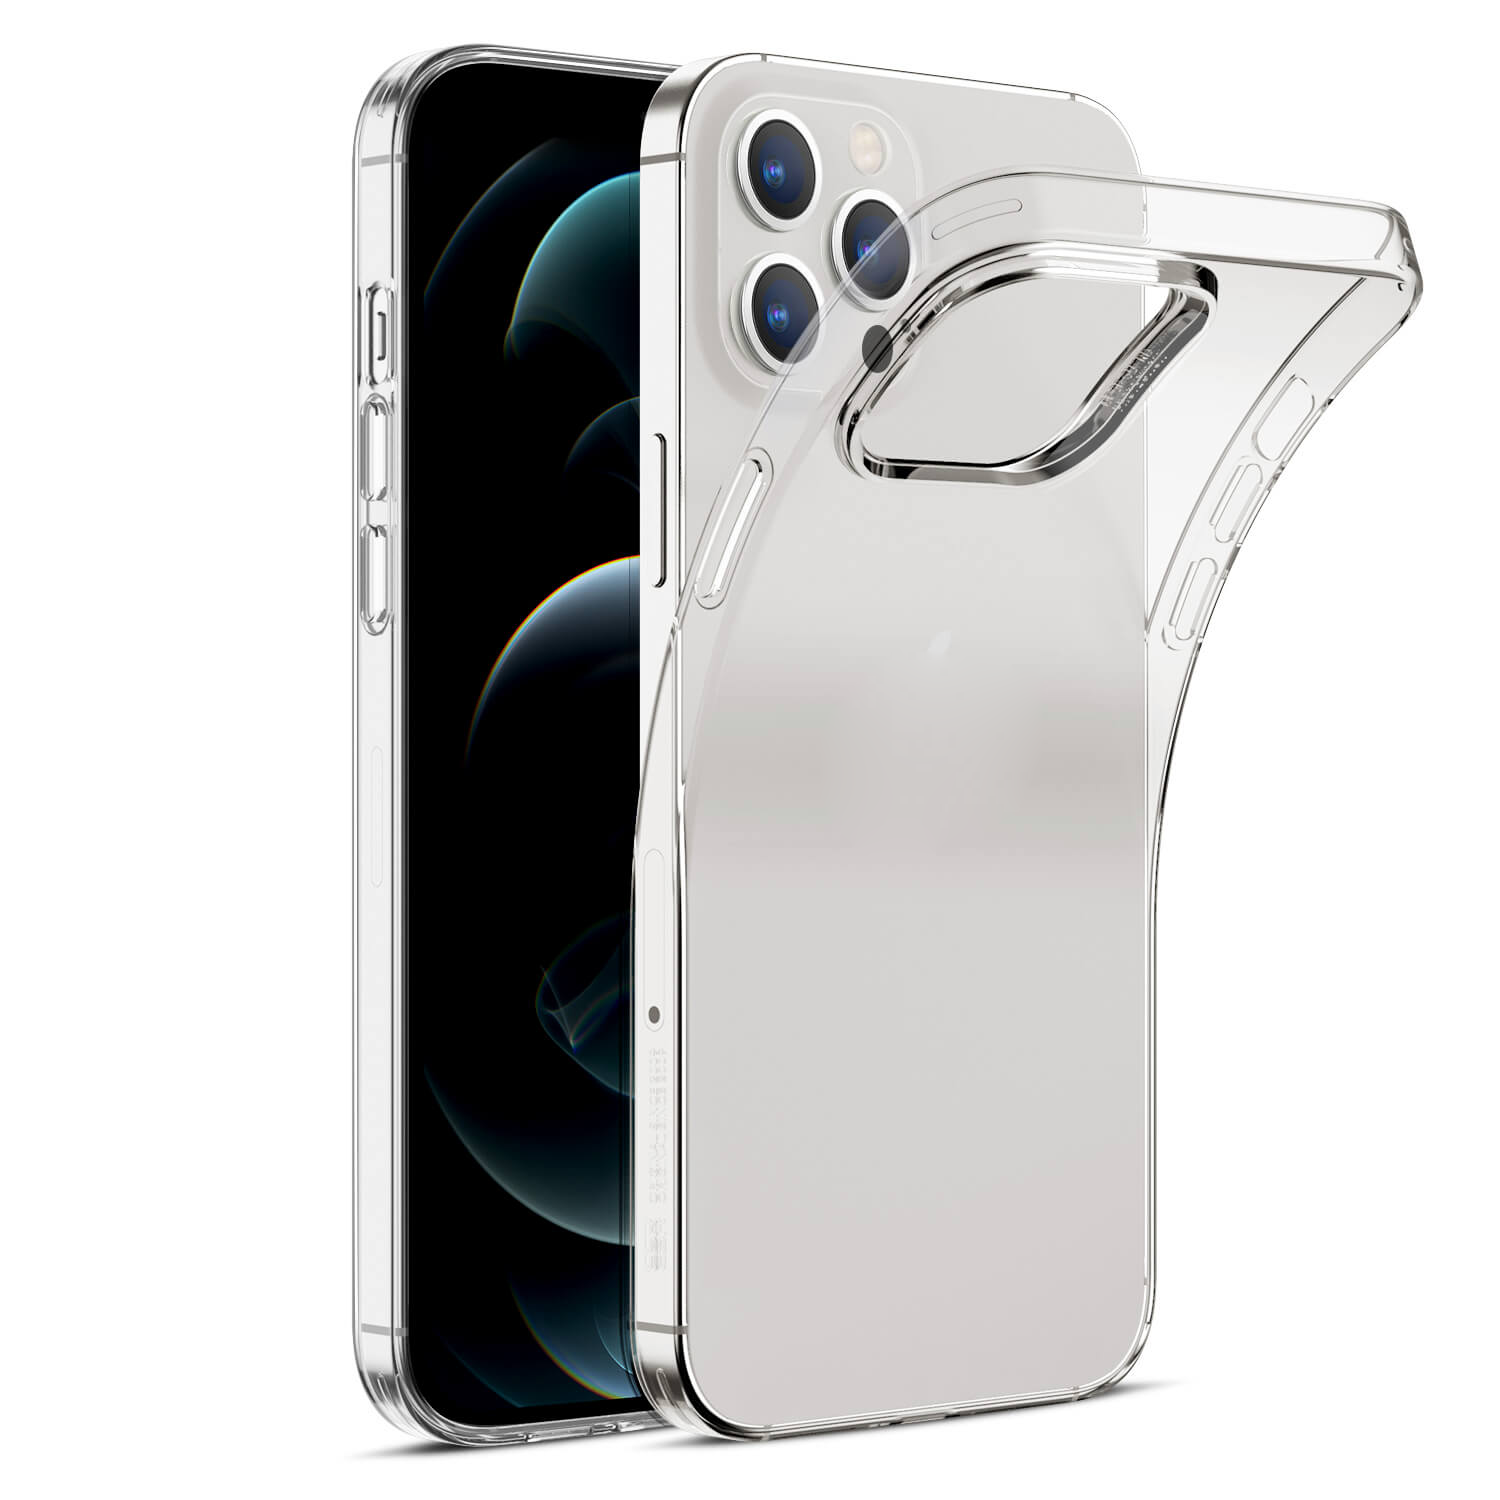 Ốp lưng dẻo silicon trong suốt cho iPhone 12 Pro Max hiệu Ultra Thin (siêu mỏng 0.6mm, chống trầy, chống bụi) - Hàng nhập khẩu